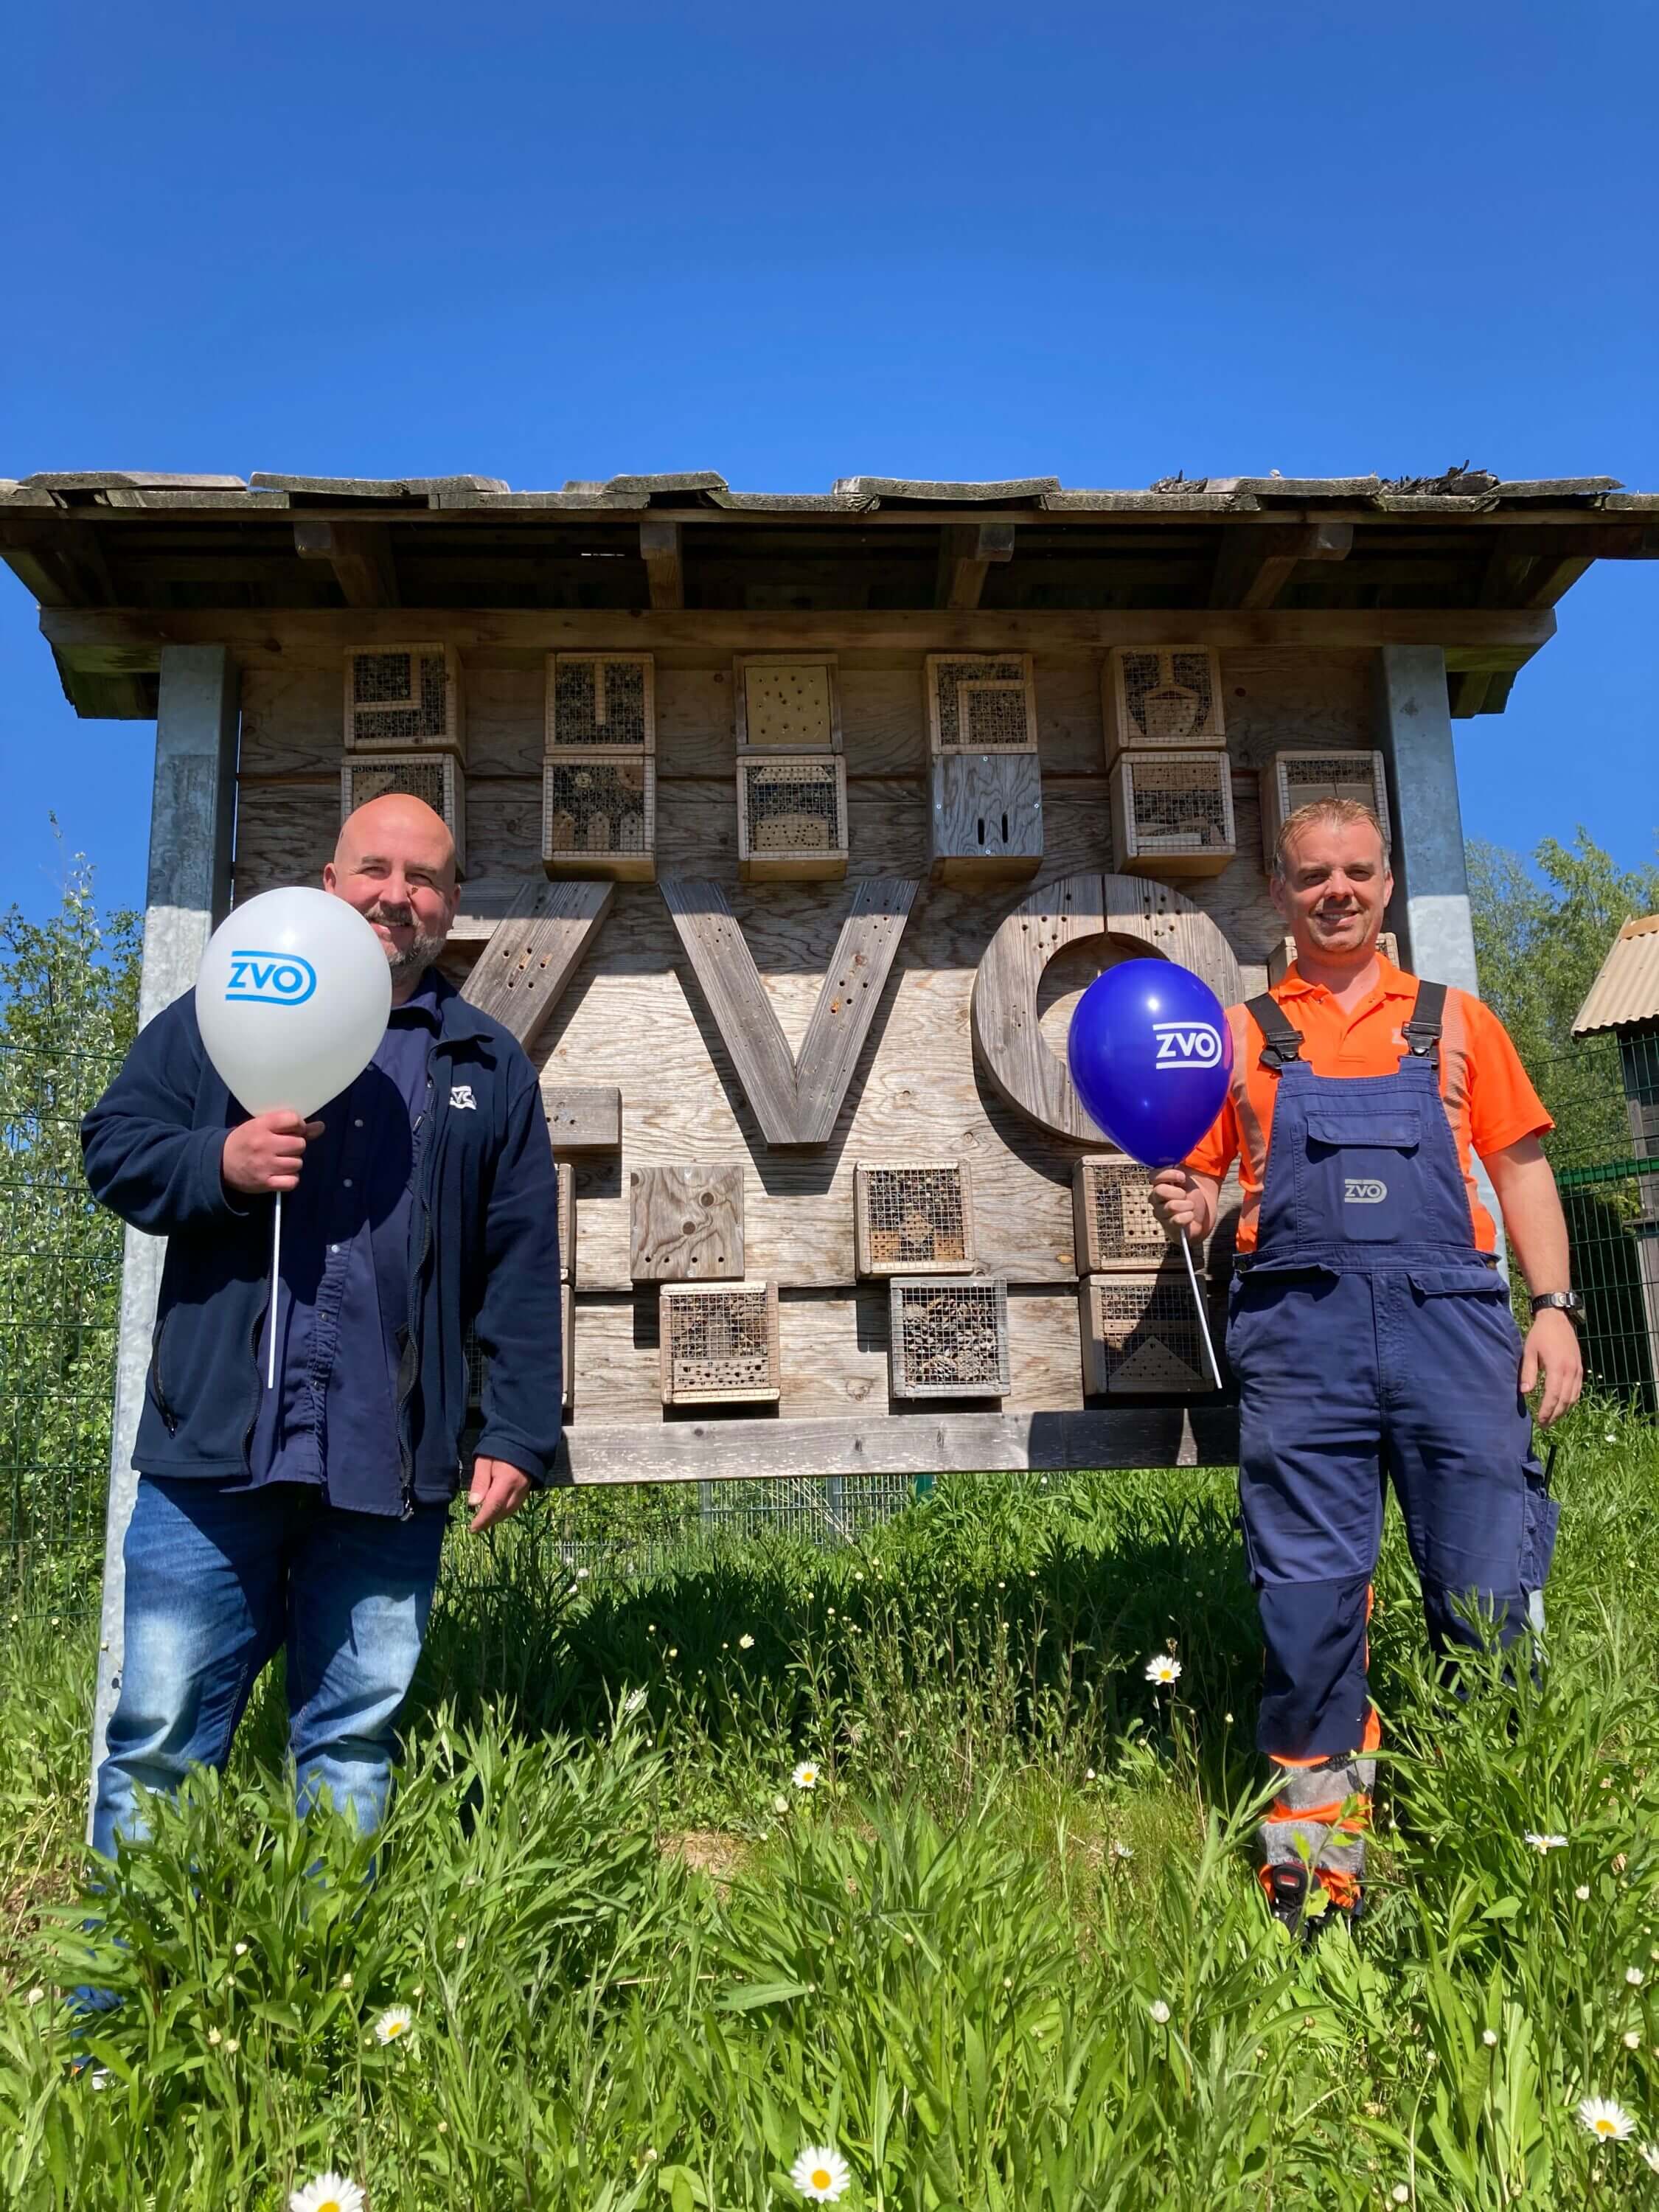 Mike-Andreas Dühning, Mitarbeiter und Sven Thode, Vorarbeiter Recyclinghof, vor einem Insektenhotel stehend, mit ZVO Luftballons in der Hand